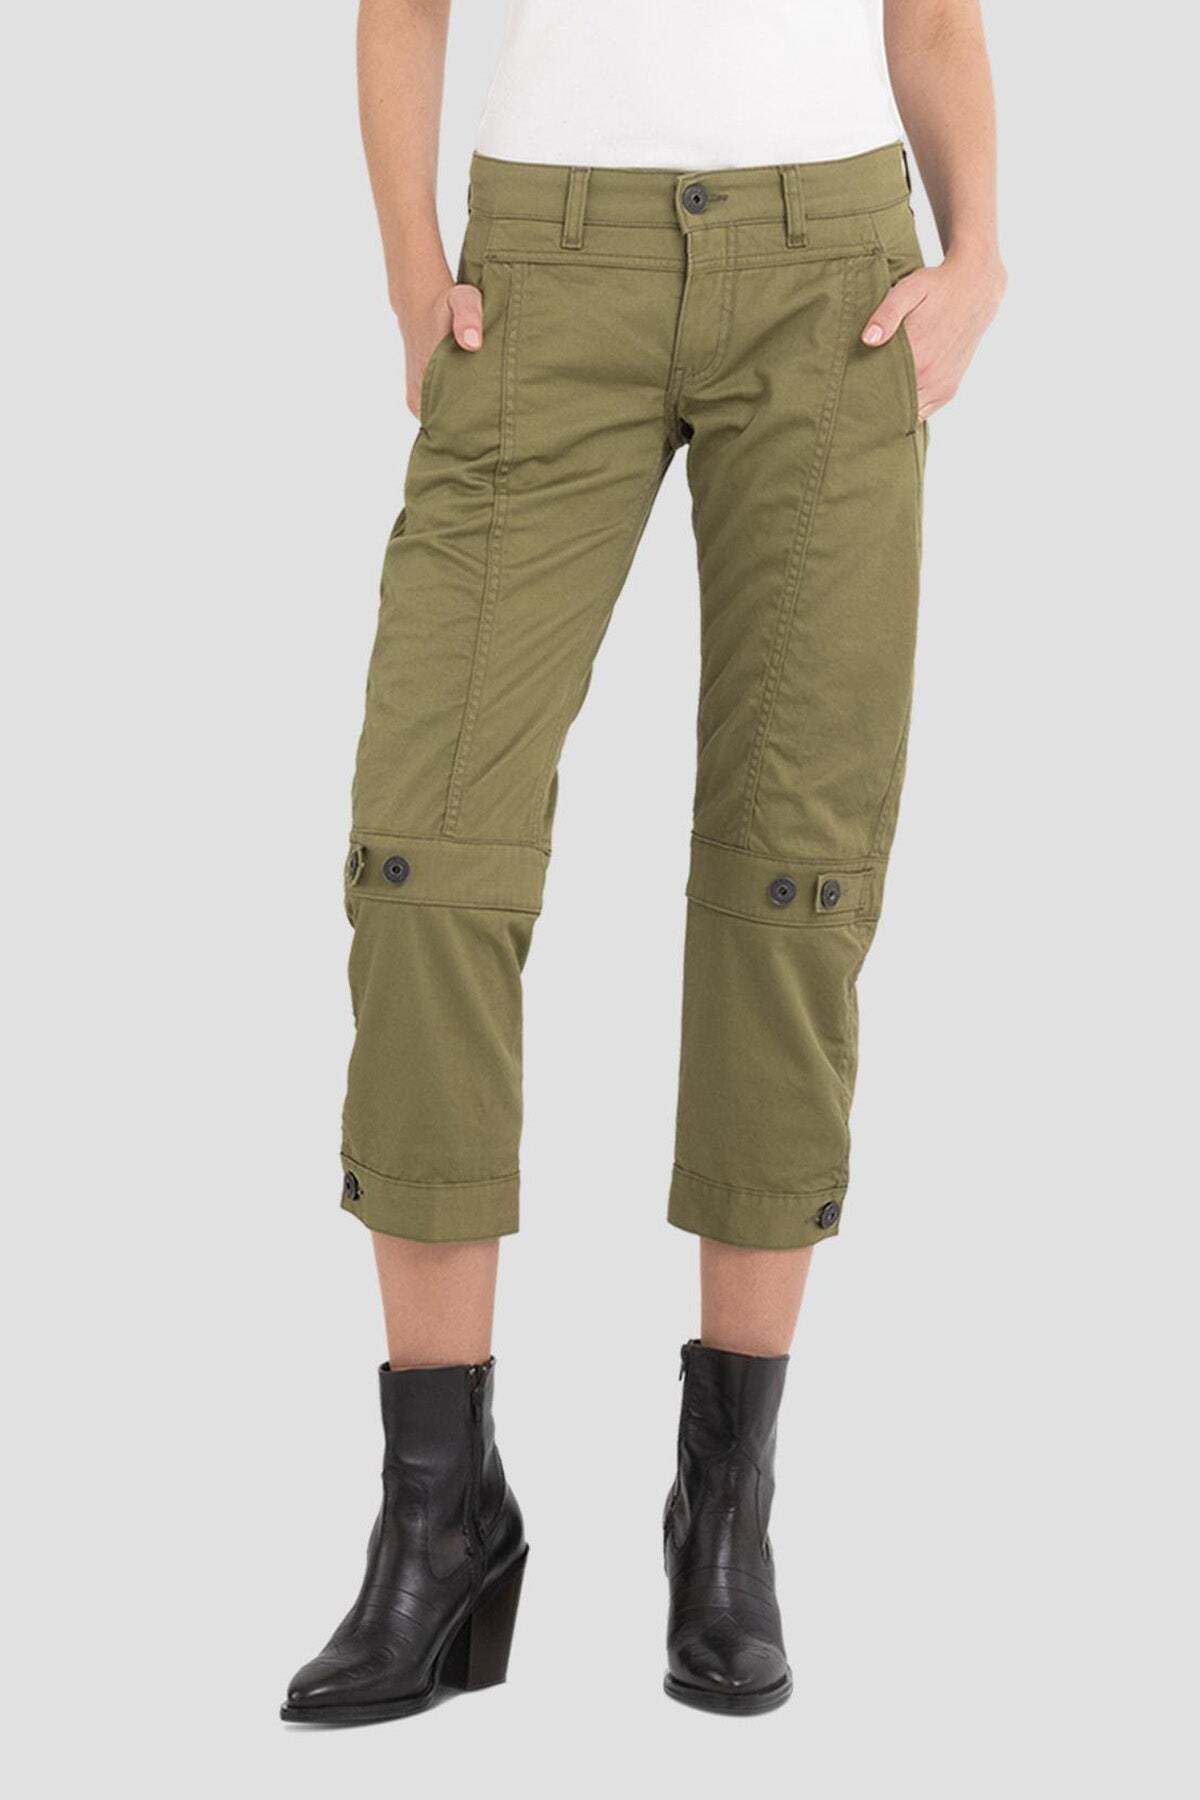 Replay Regular Fit Crop Pantolon 26 / A.yeşil